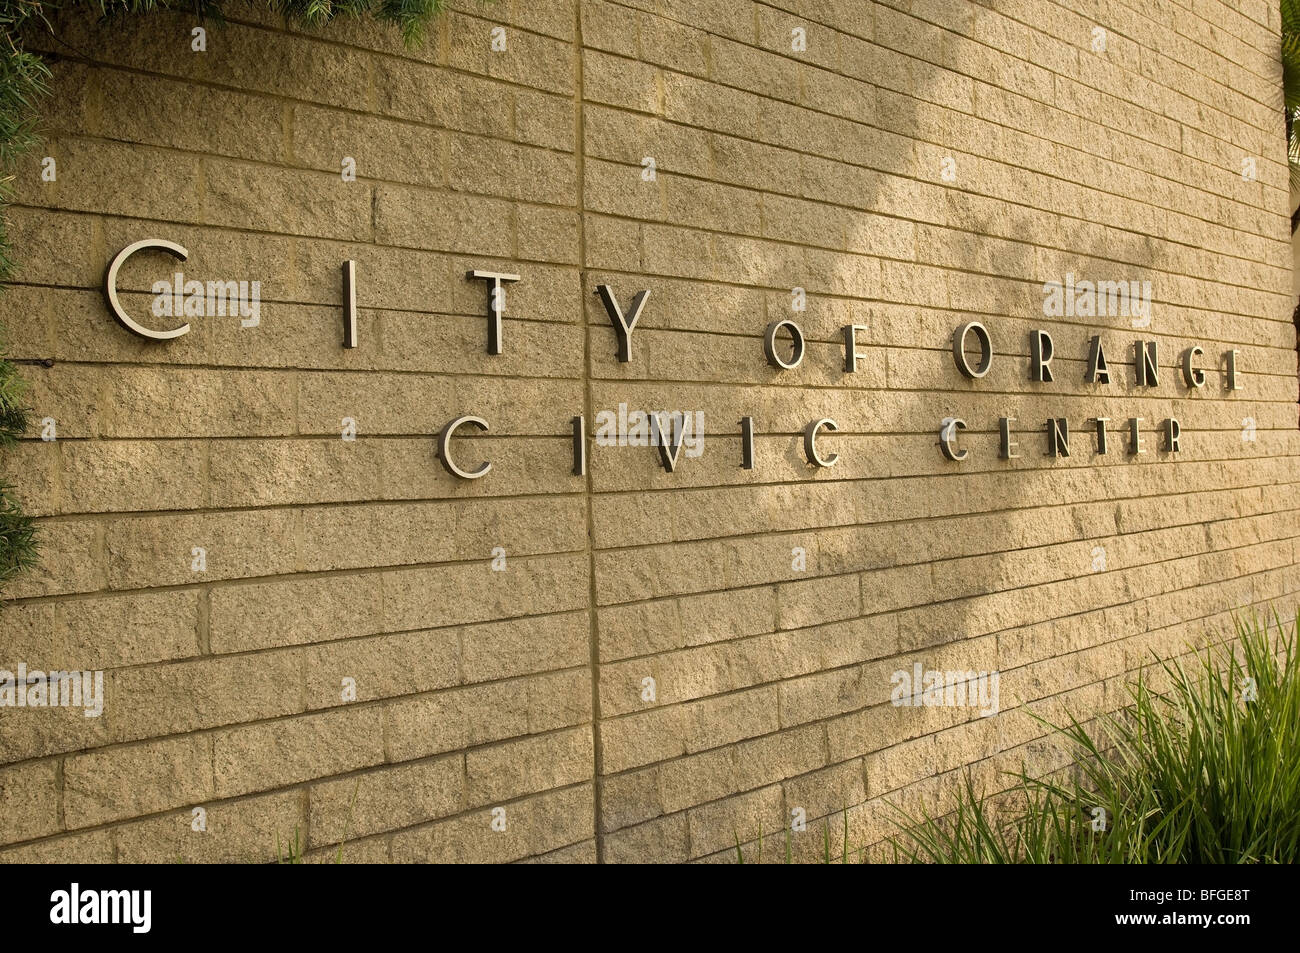 Città di Orange Civic Center Foto Stock